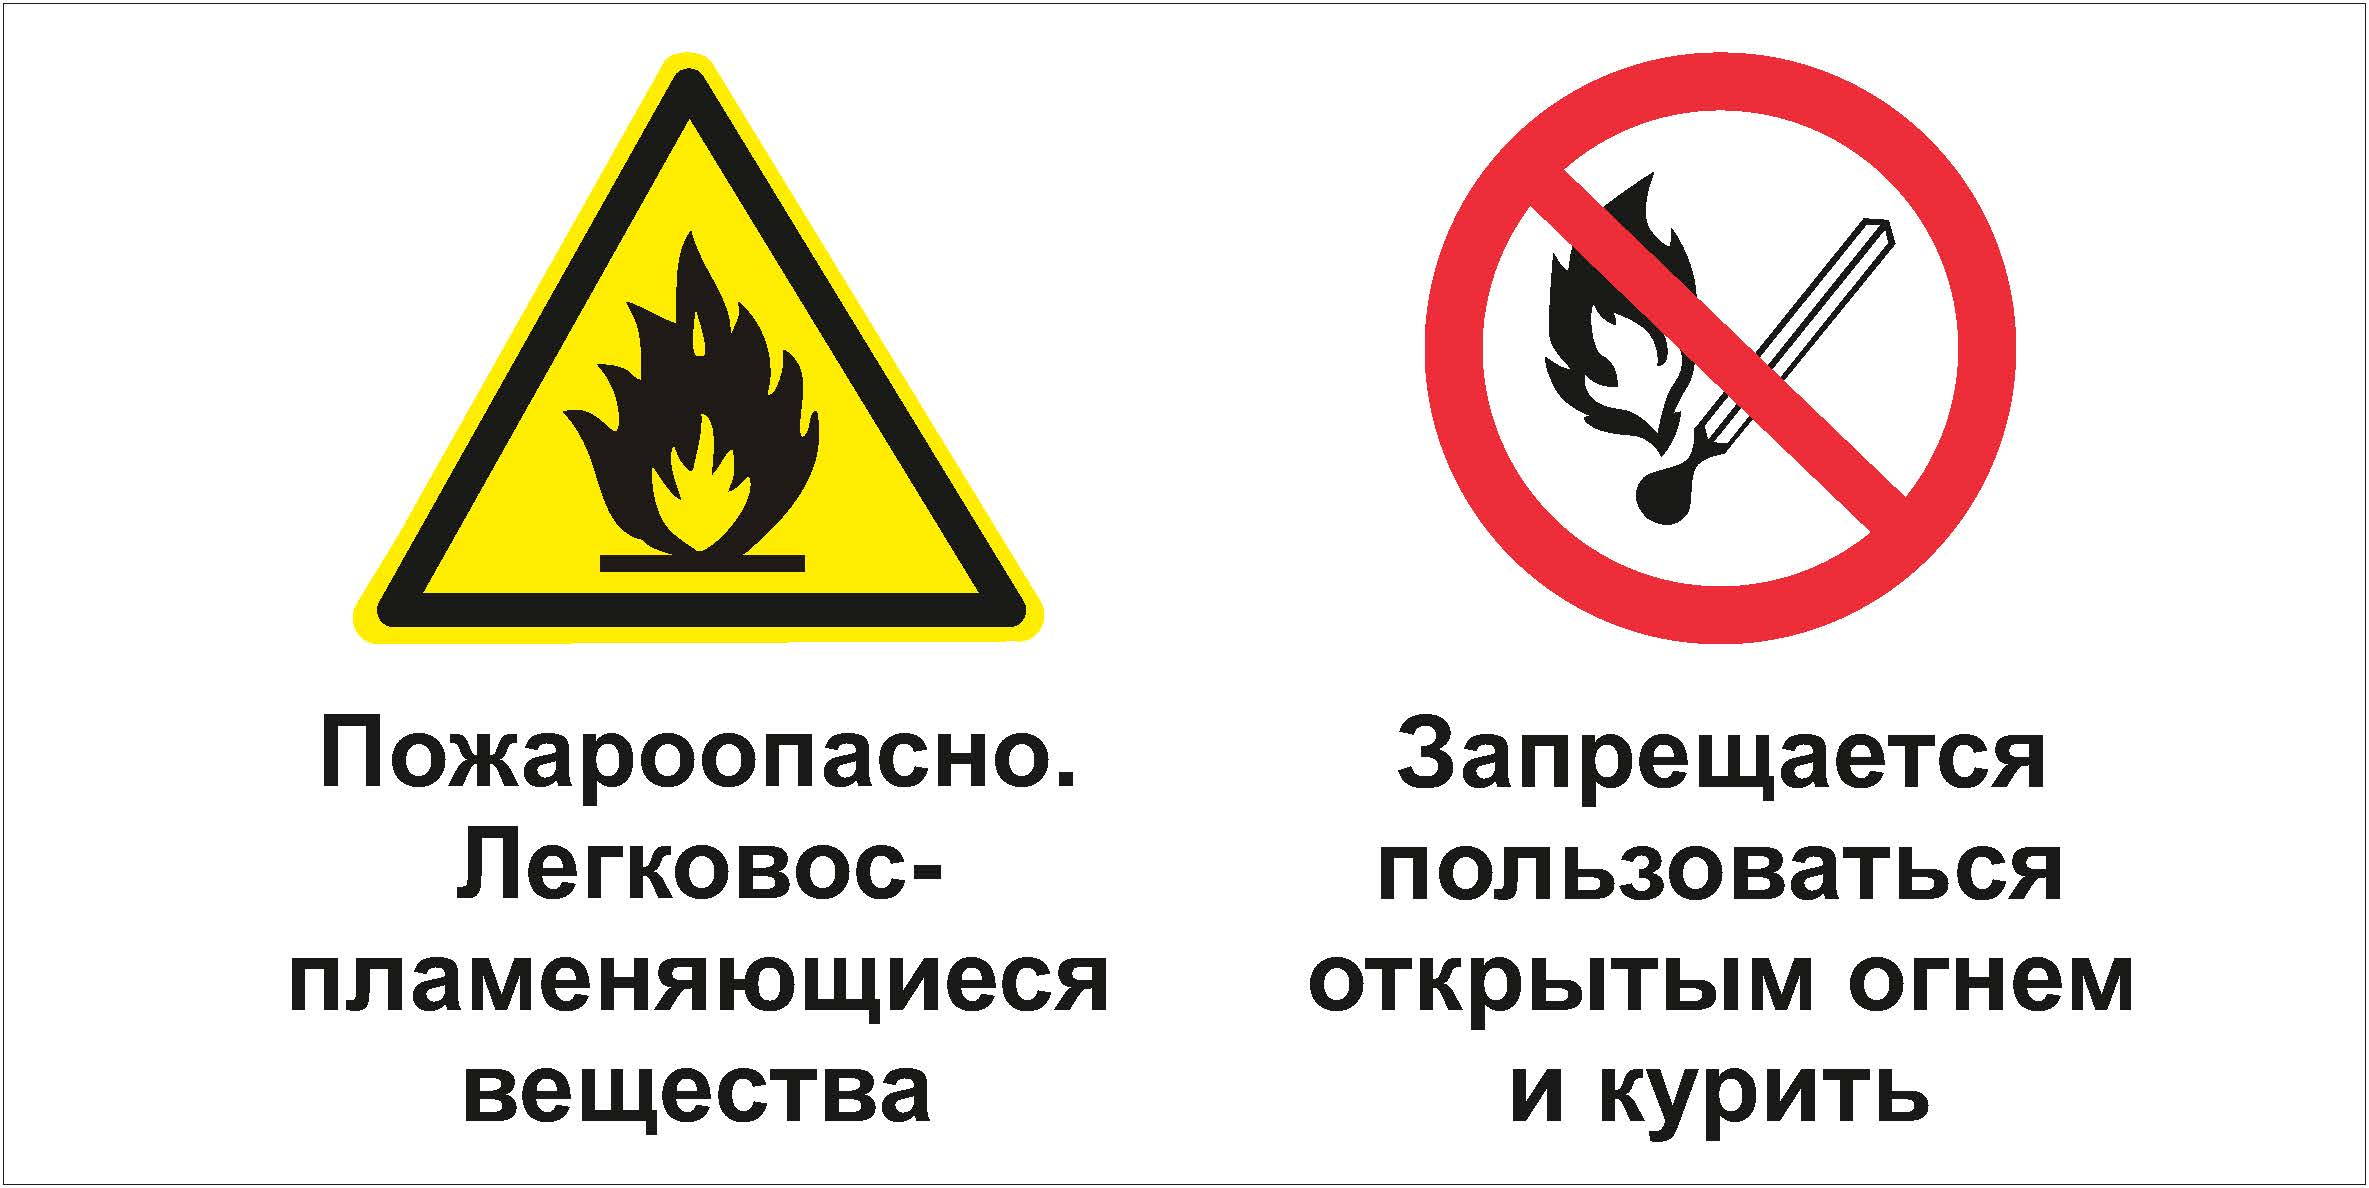 Запрещается в вентиляционных. Знак запрещается пользоваться открытым огнем и курить. Табличка запрещается пользоваться открытым огнем. Запрет использования открытого огня. "Запрещается курить", "запрещается пользоваться открытым огнем"..